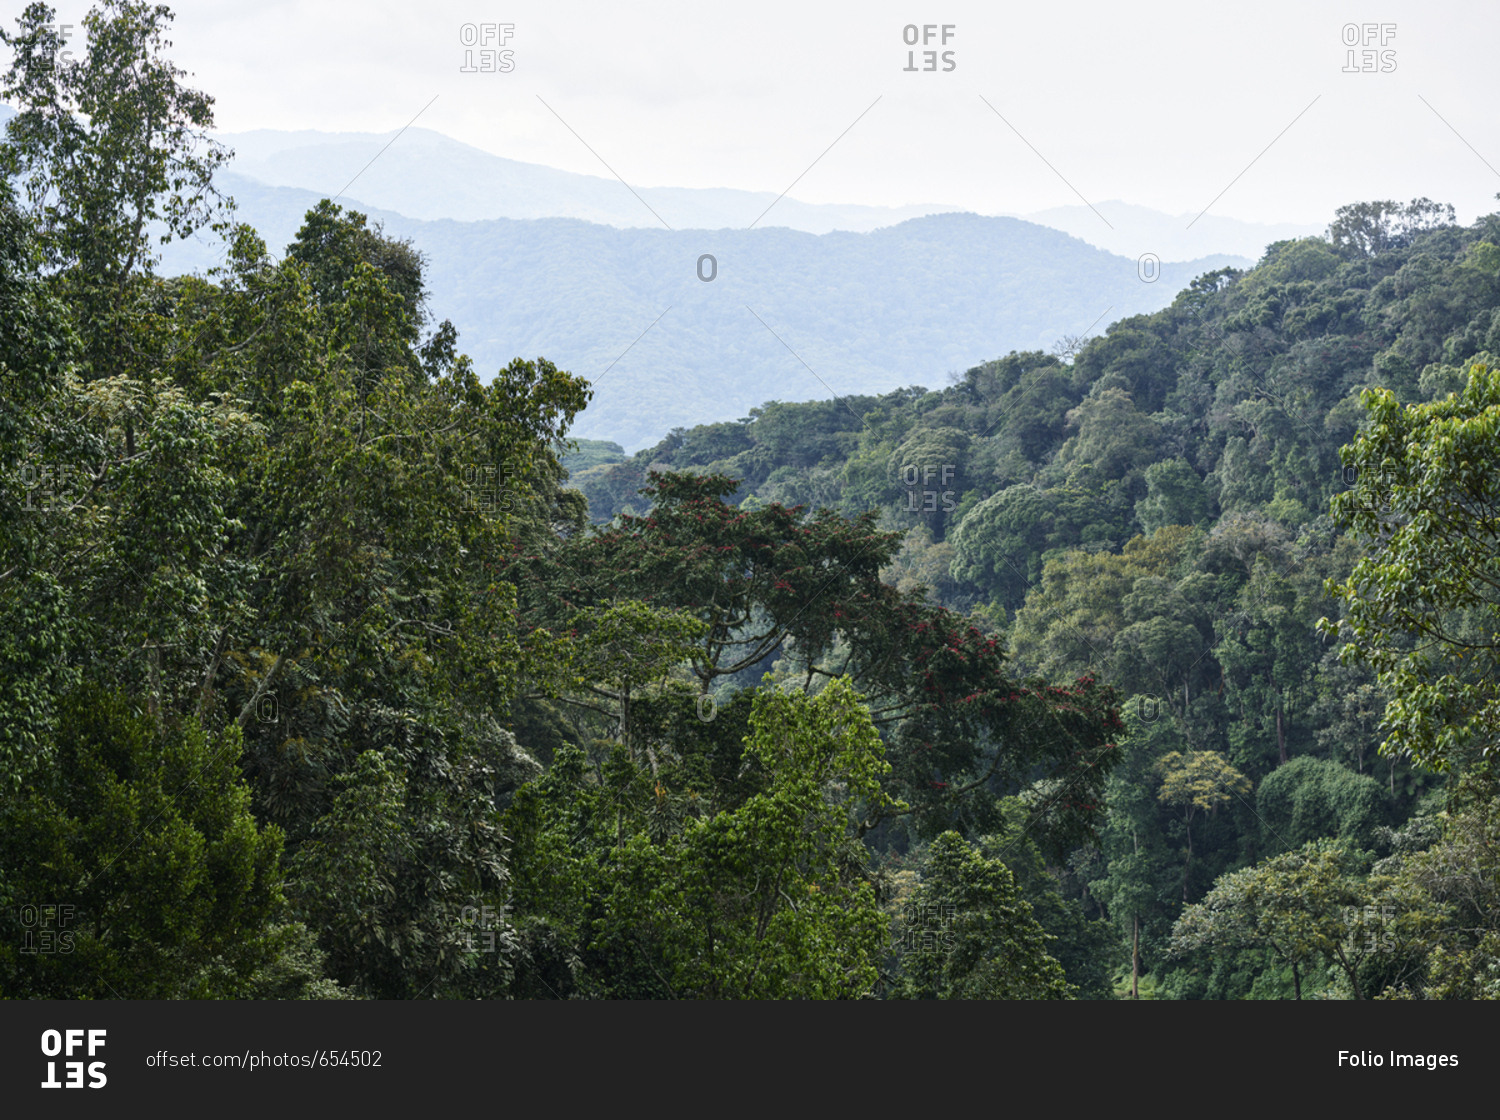 Nyungwe Forest in Rwanda